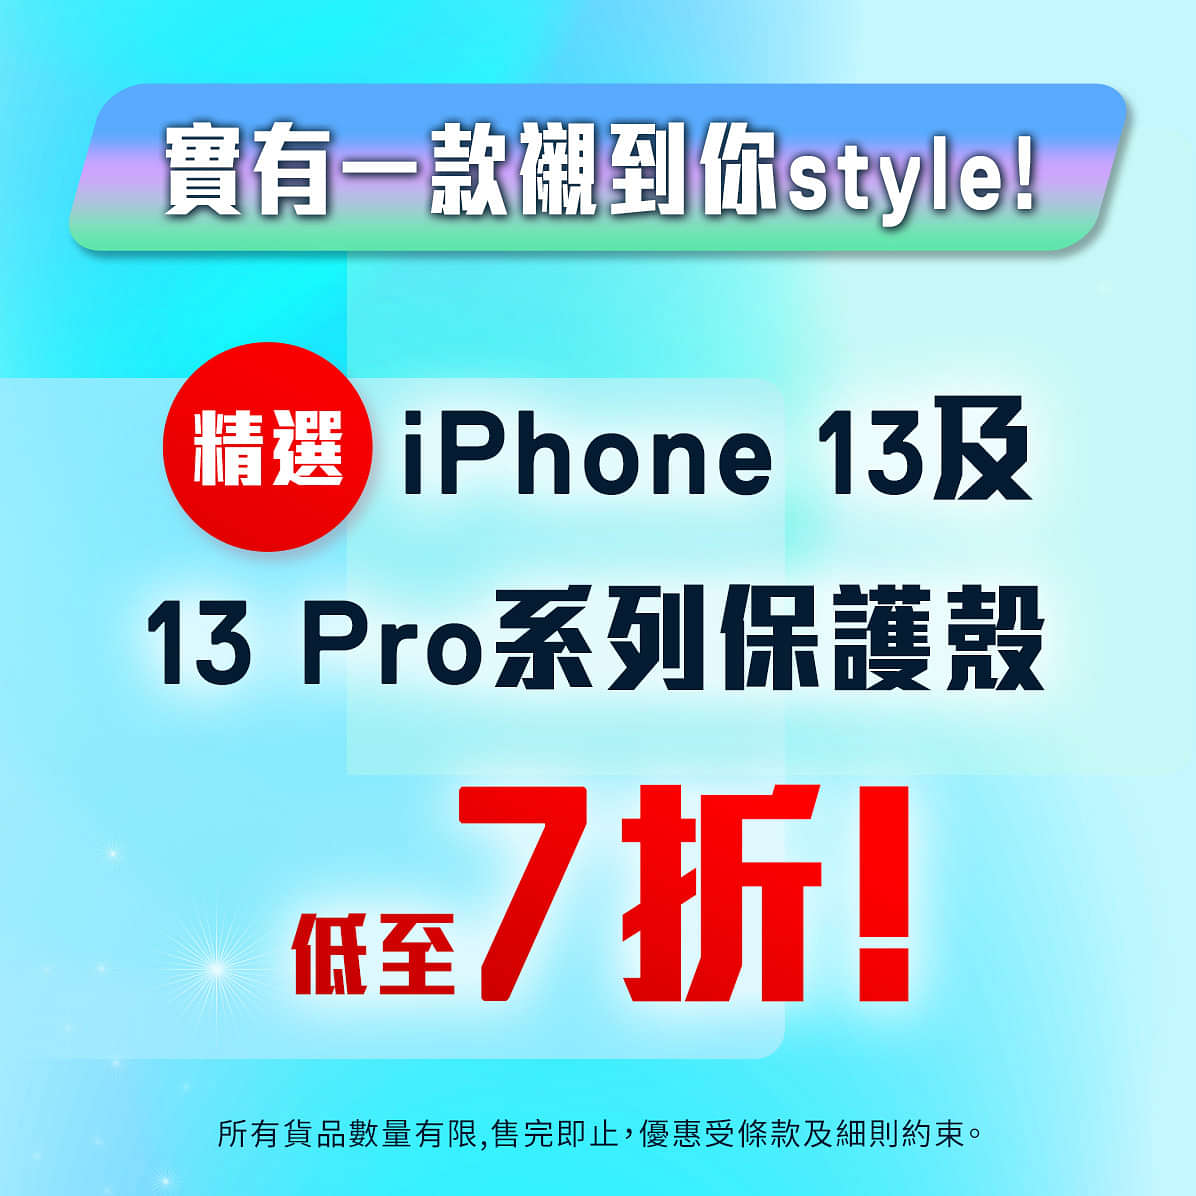 【#總有一款襯你style 精選iPhone 13及iPhone 13 Pro系列手機殼低至7⃣折!】
iPhone當然要不定時更換手機殼，先keep住有全新又靚嘅外表!依家精選iPhone 13及iPhone 13 Pro系